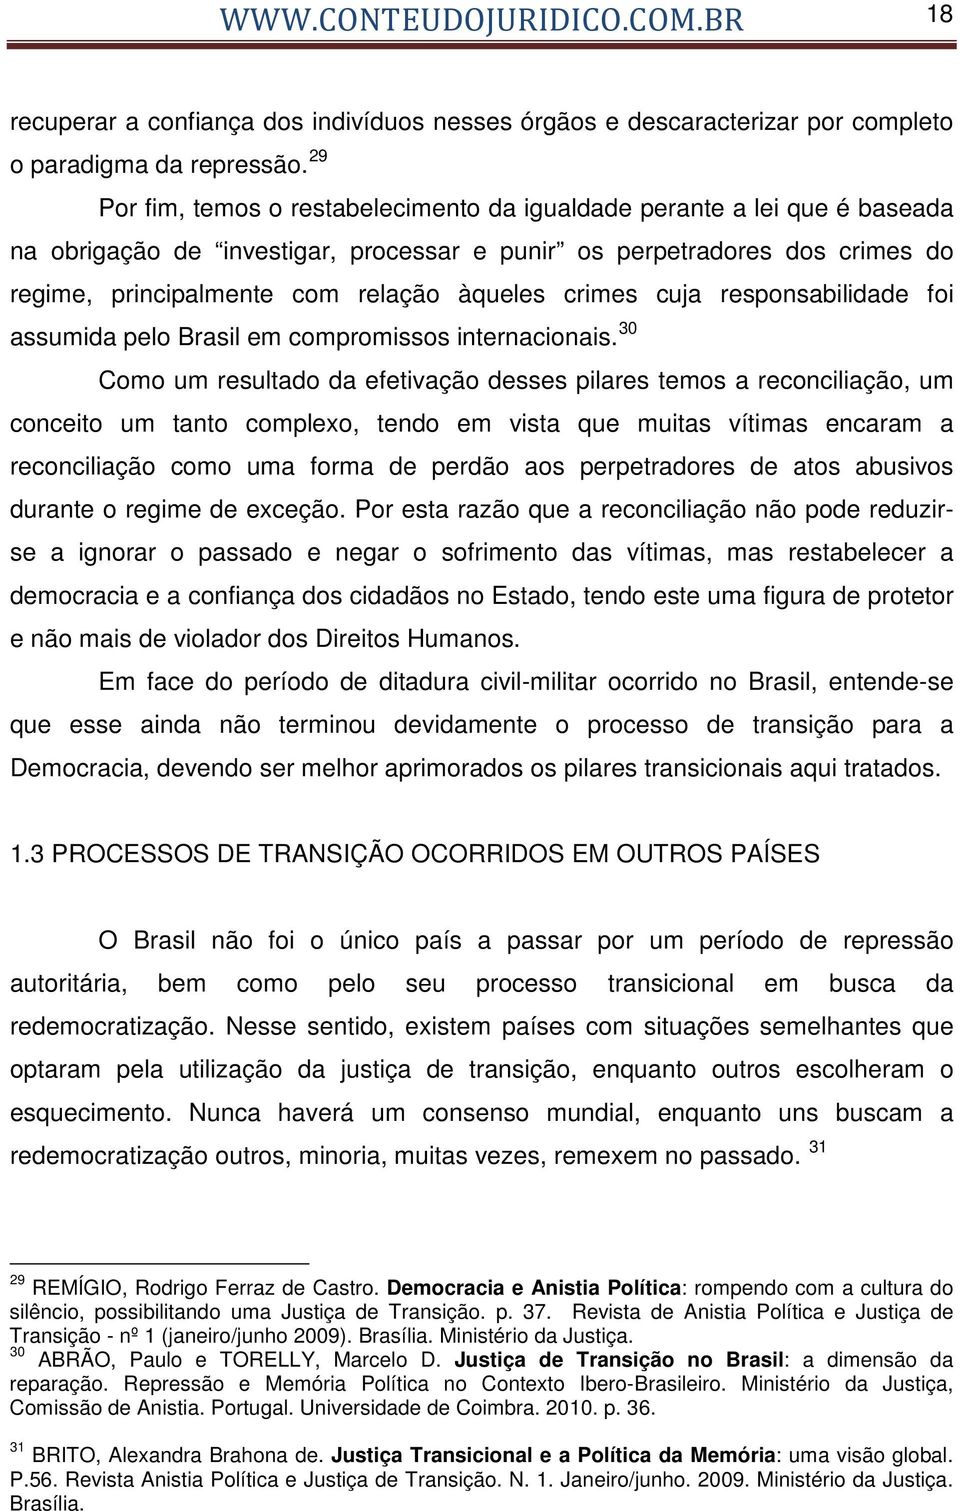 crimes cuja responsabilidade foi assumida pelo Brasil em compromissos internacionais.